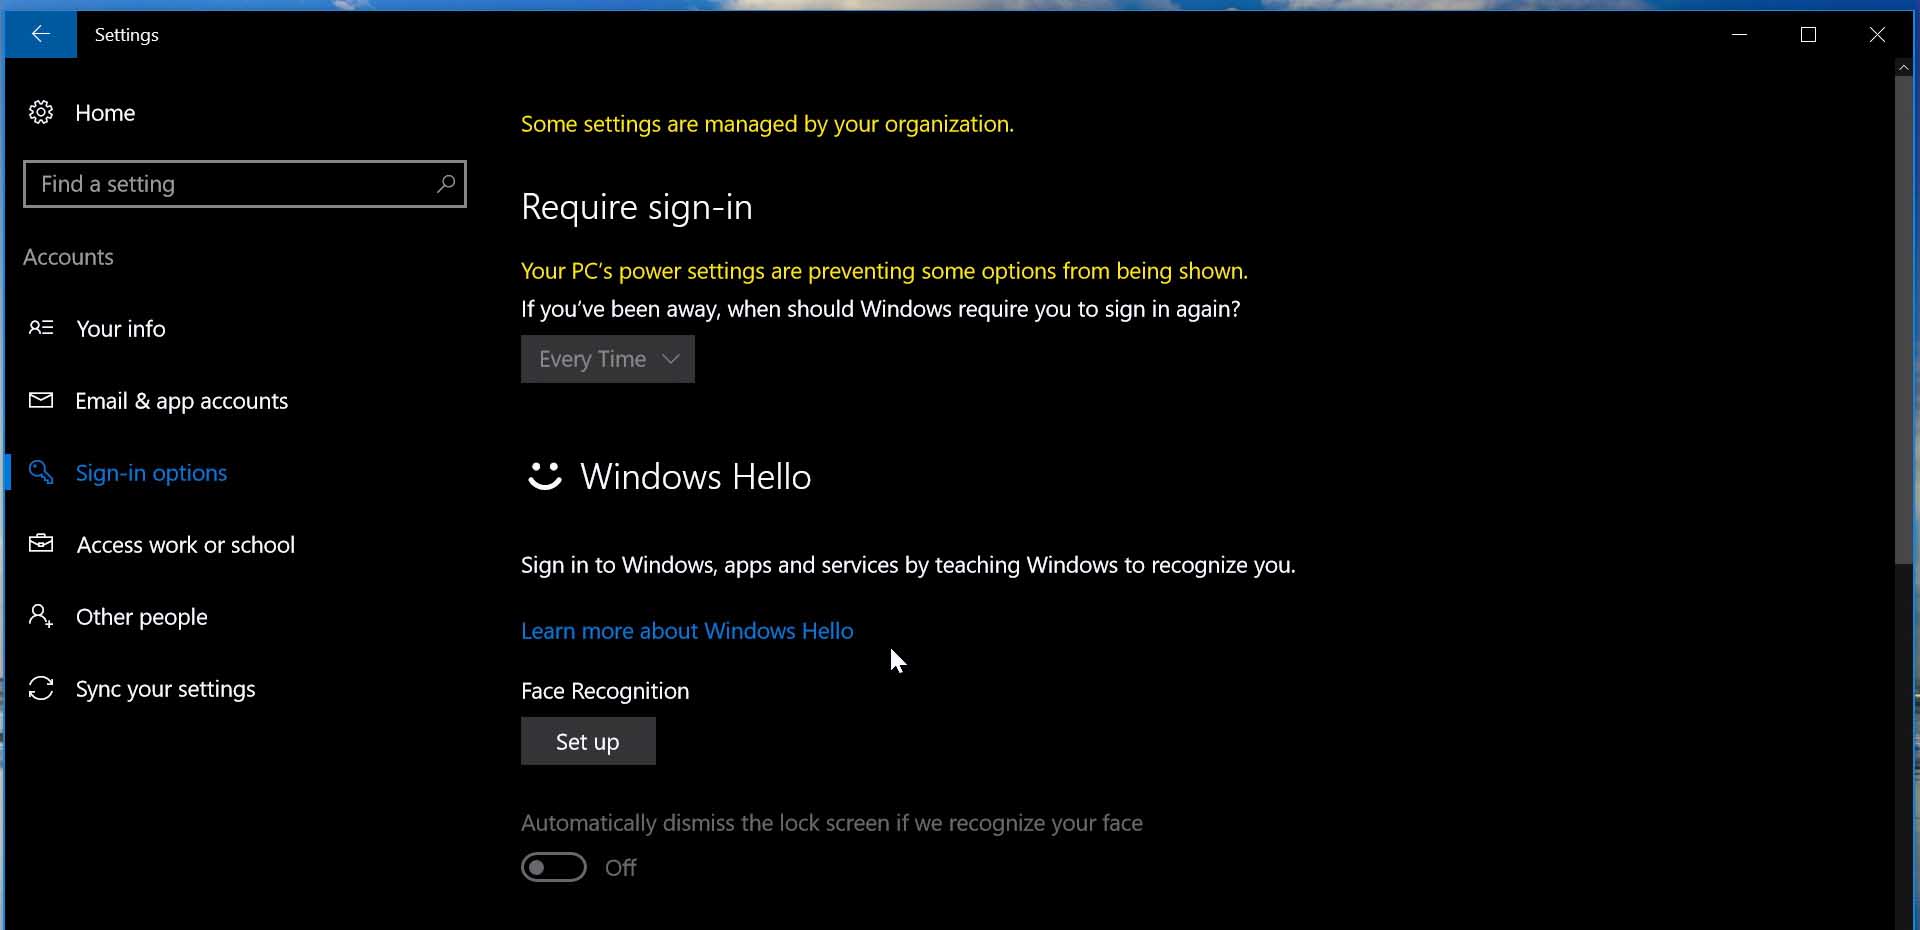 Windows 10 settings menu